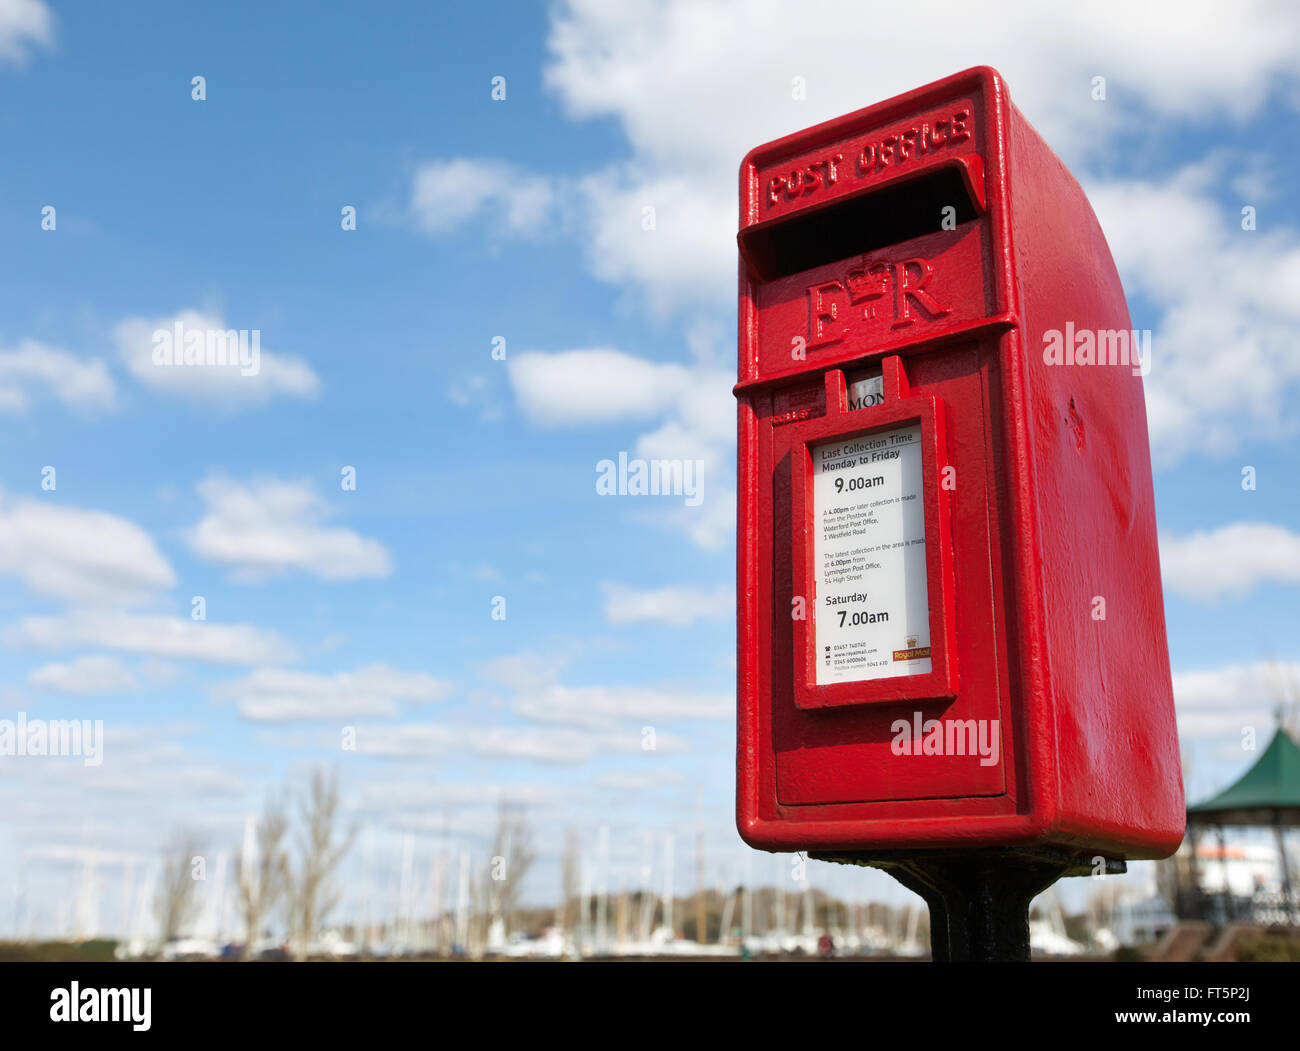 Une boîte aux lettres rouge sur la photo contre un blue cloudy sky Banque D'Images